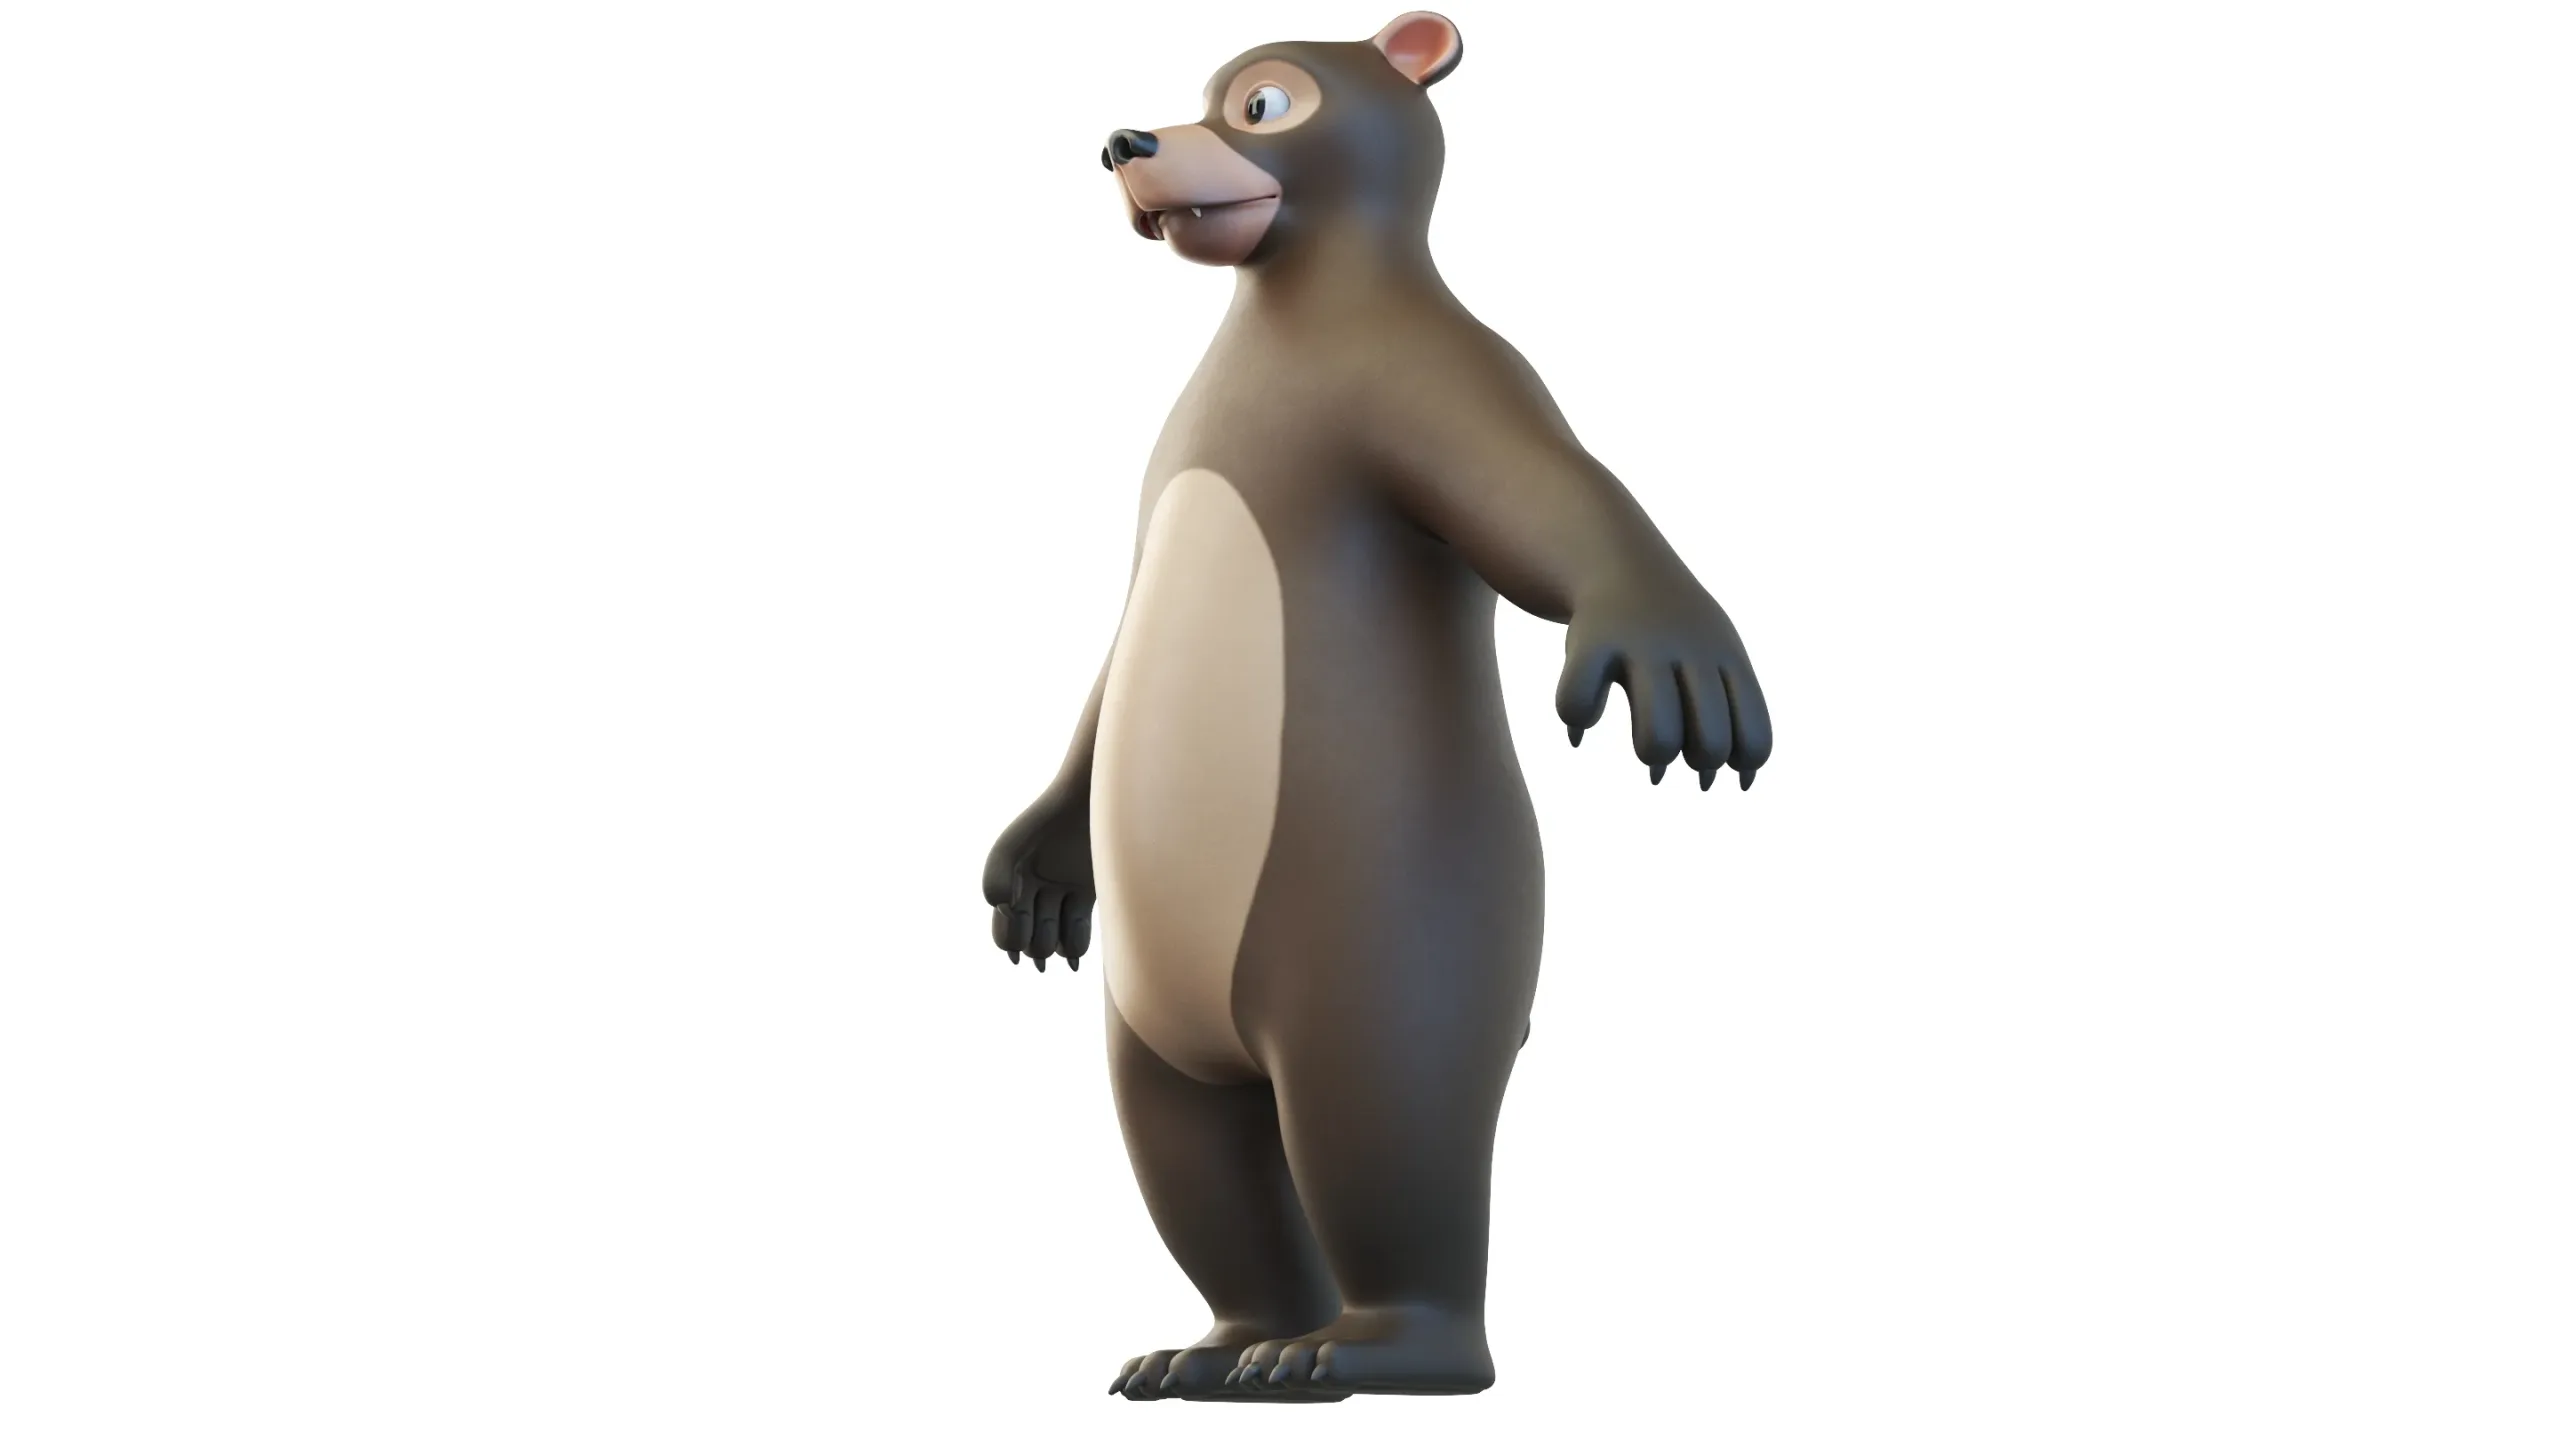 Cartoon Bear Character